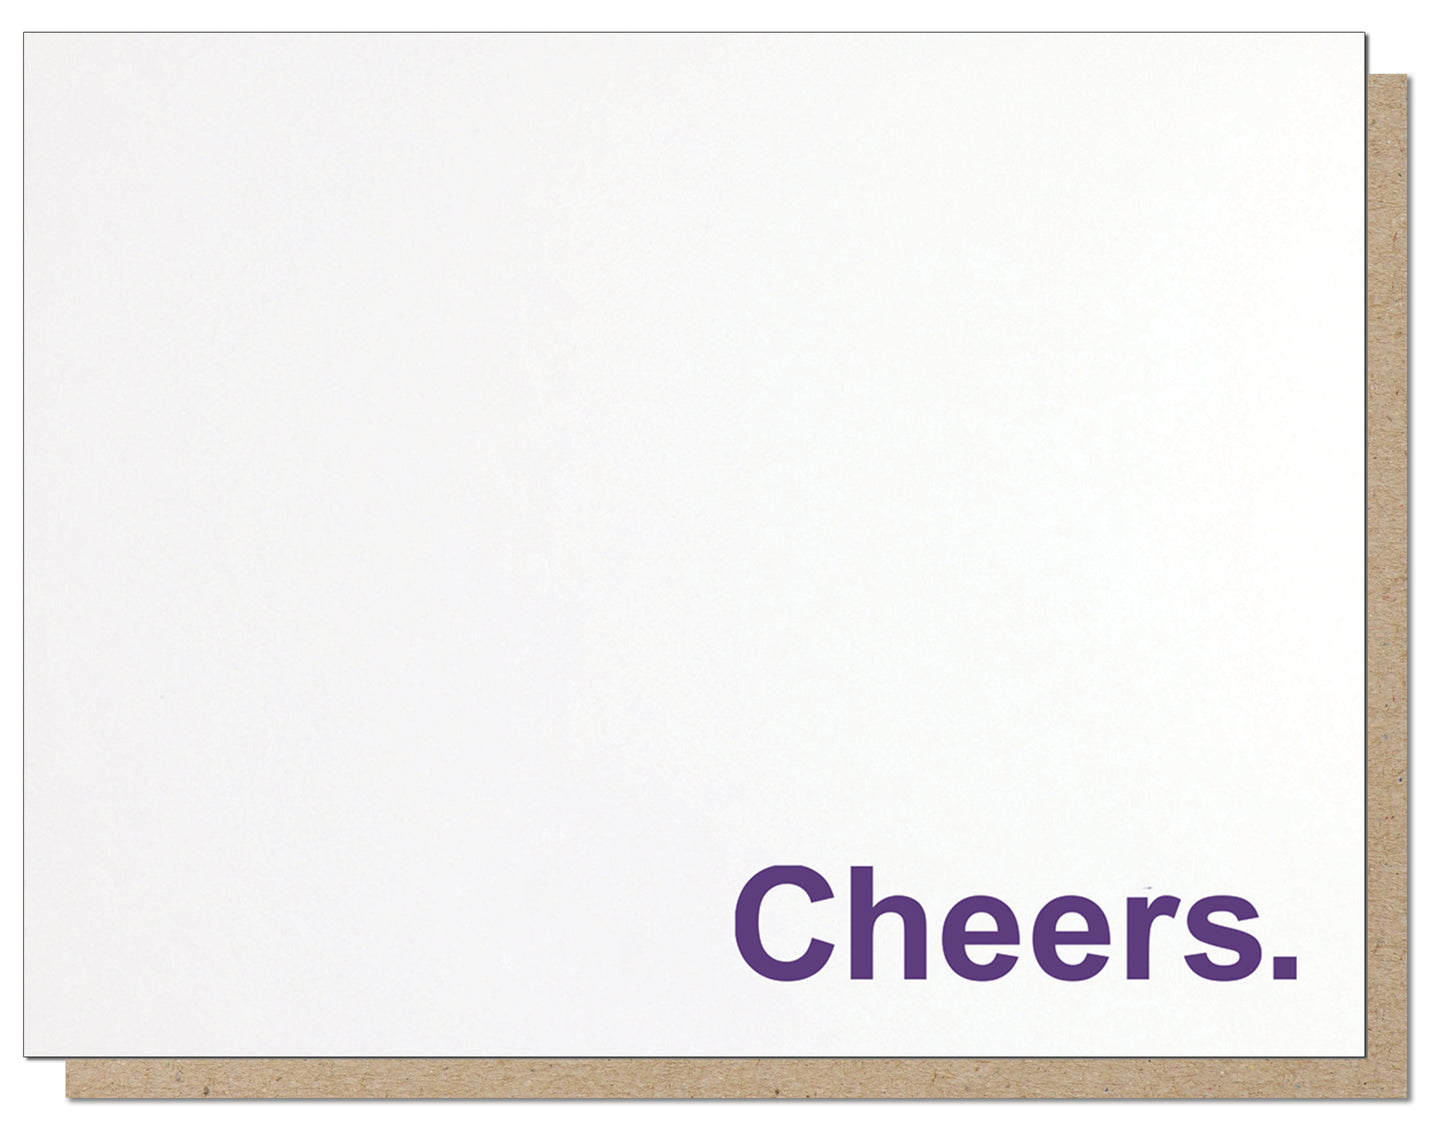 Cheers. Minimalist Letterpress Greeting Card